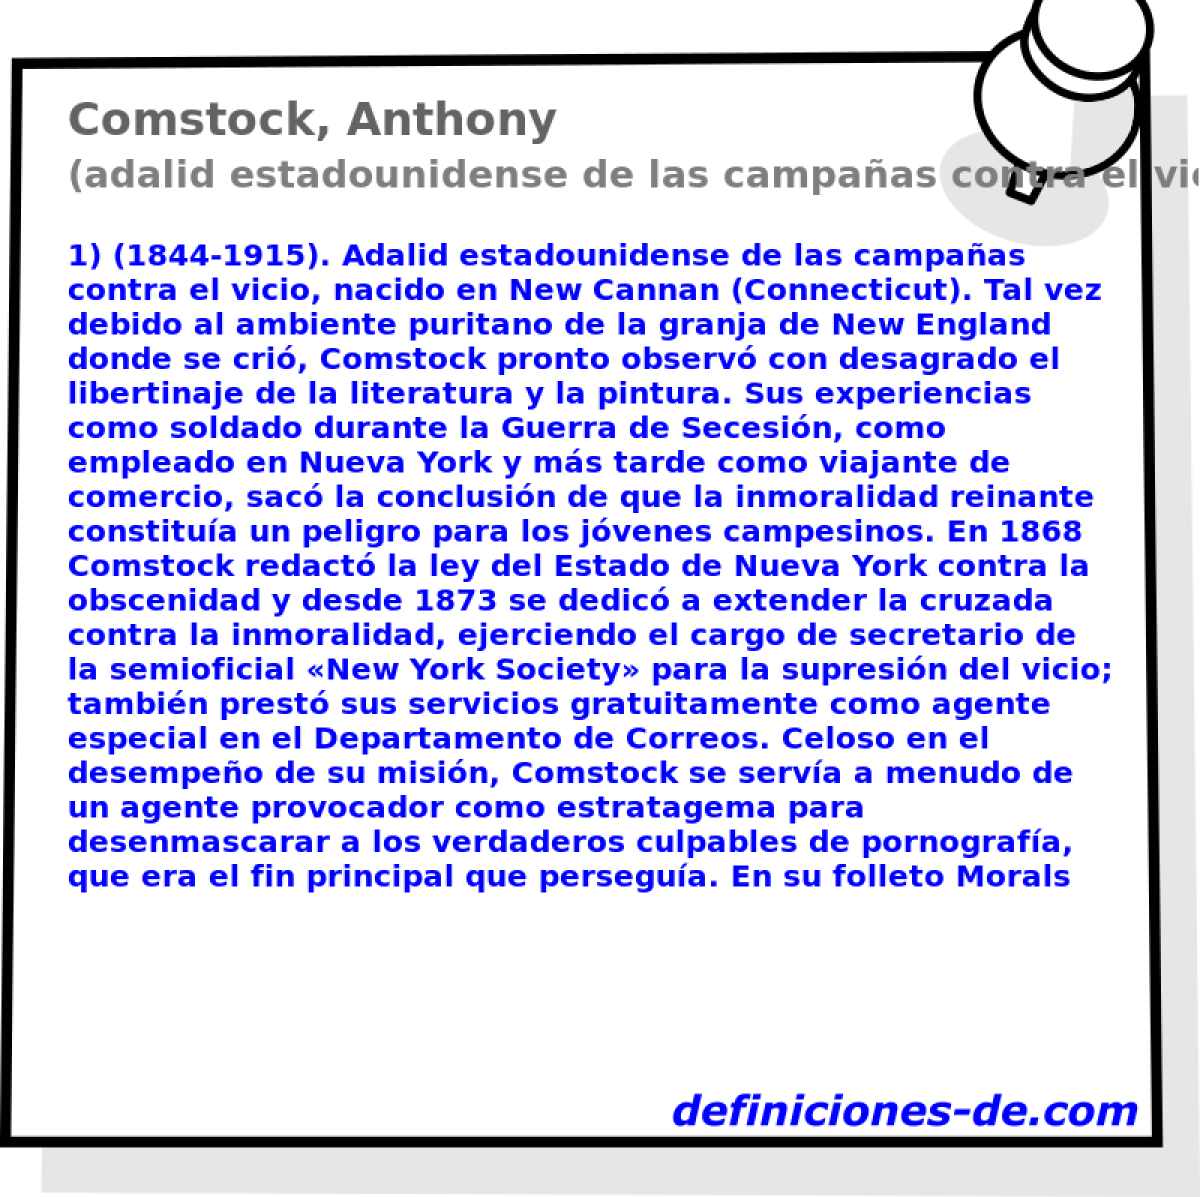 Comstock, Anthony (adalid estadounidense de las campaas contra el vicio)